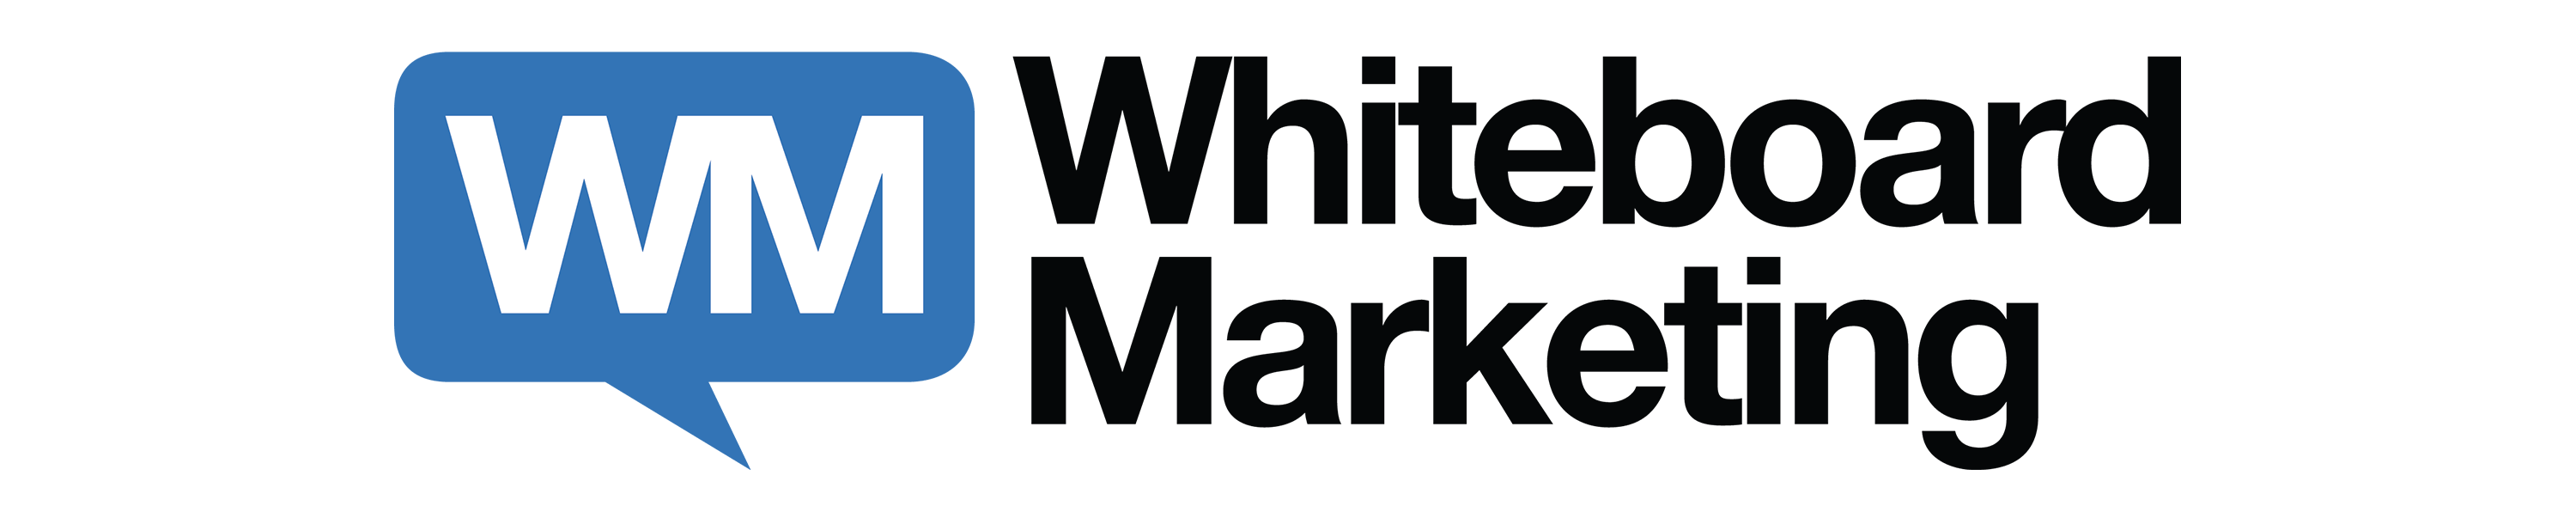 WhiteBoardMarketing_long